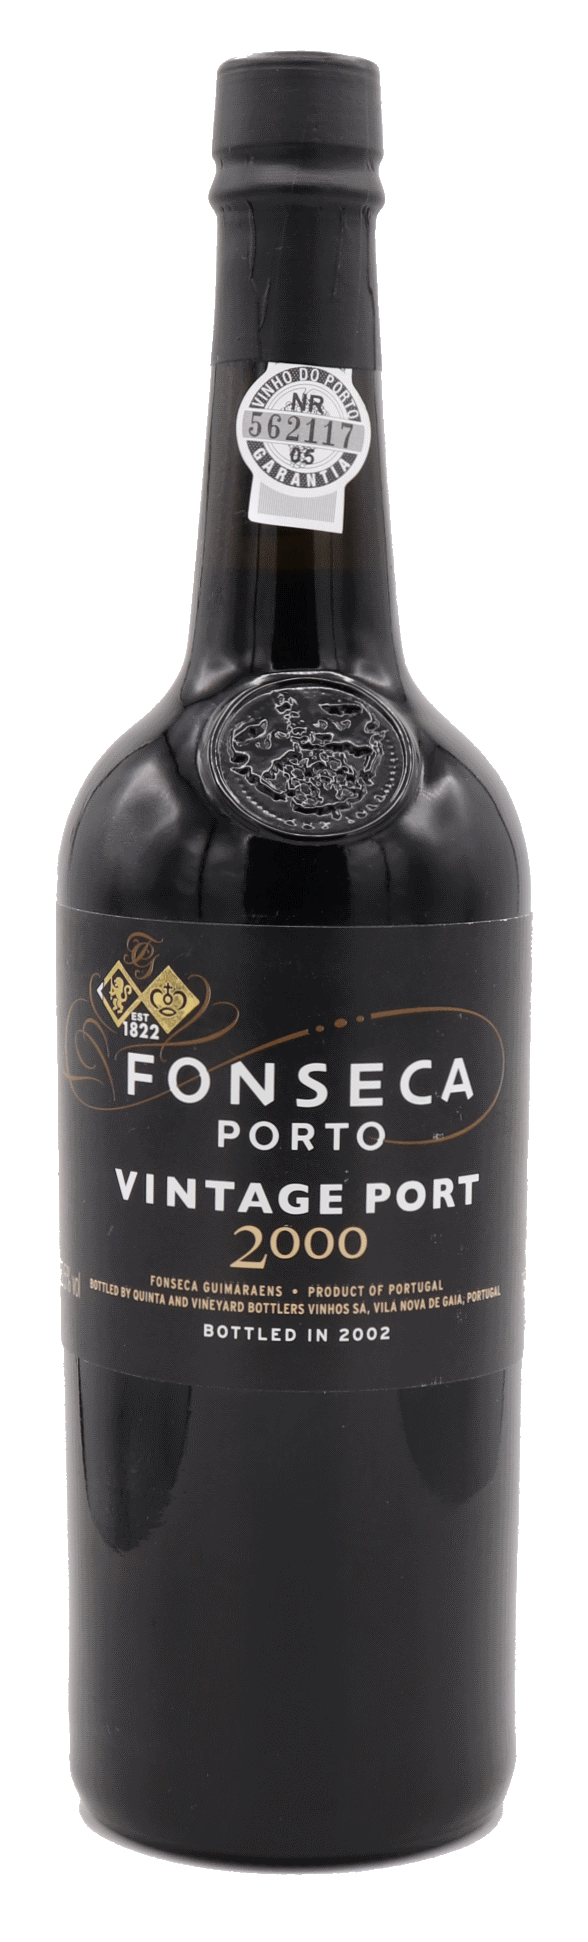 Fonseca - Vintage Port 2000